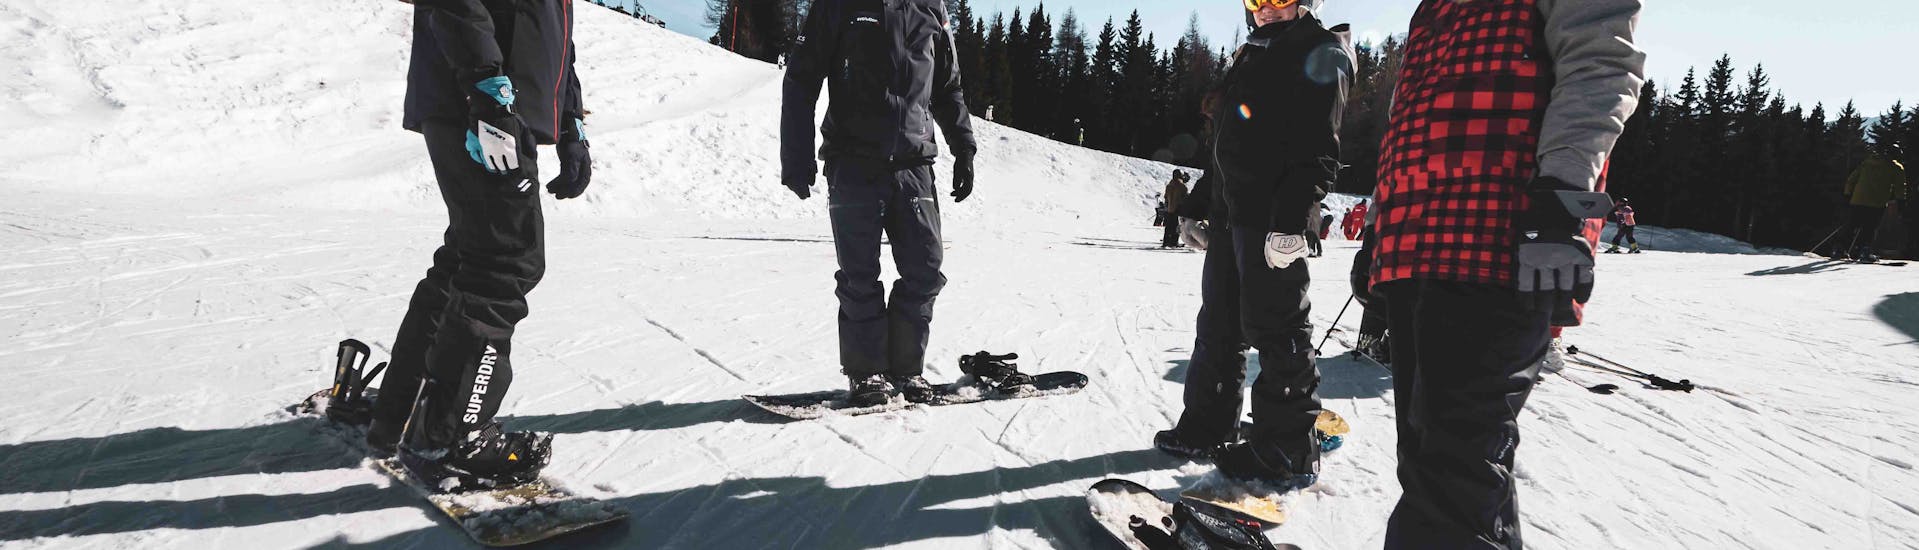 Clases de snowboard a partir de 10 años para todos los niveles con Arc Aventures by Evolution 2 1800 .